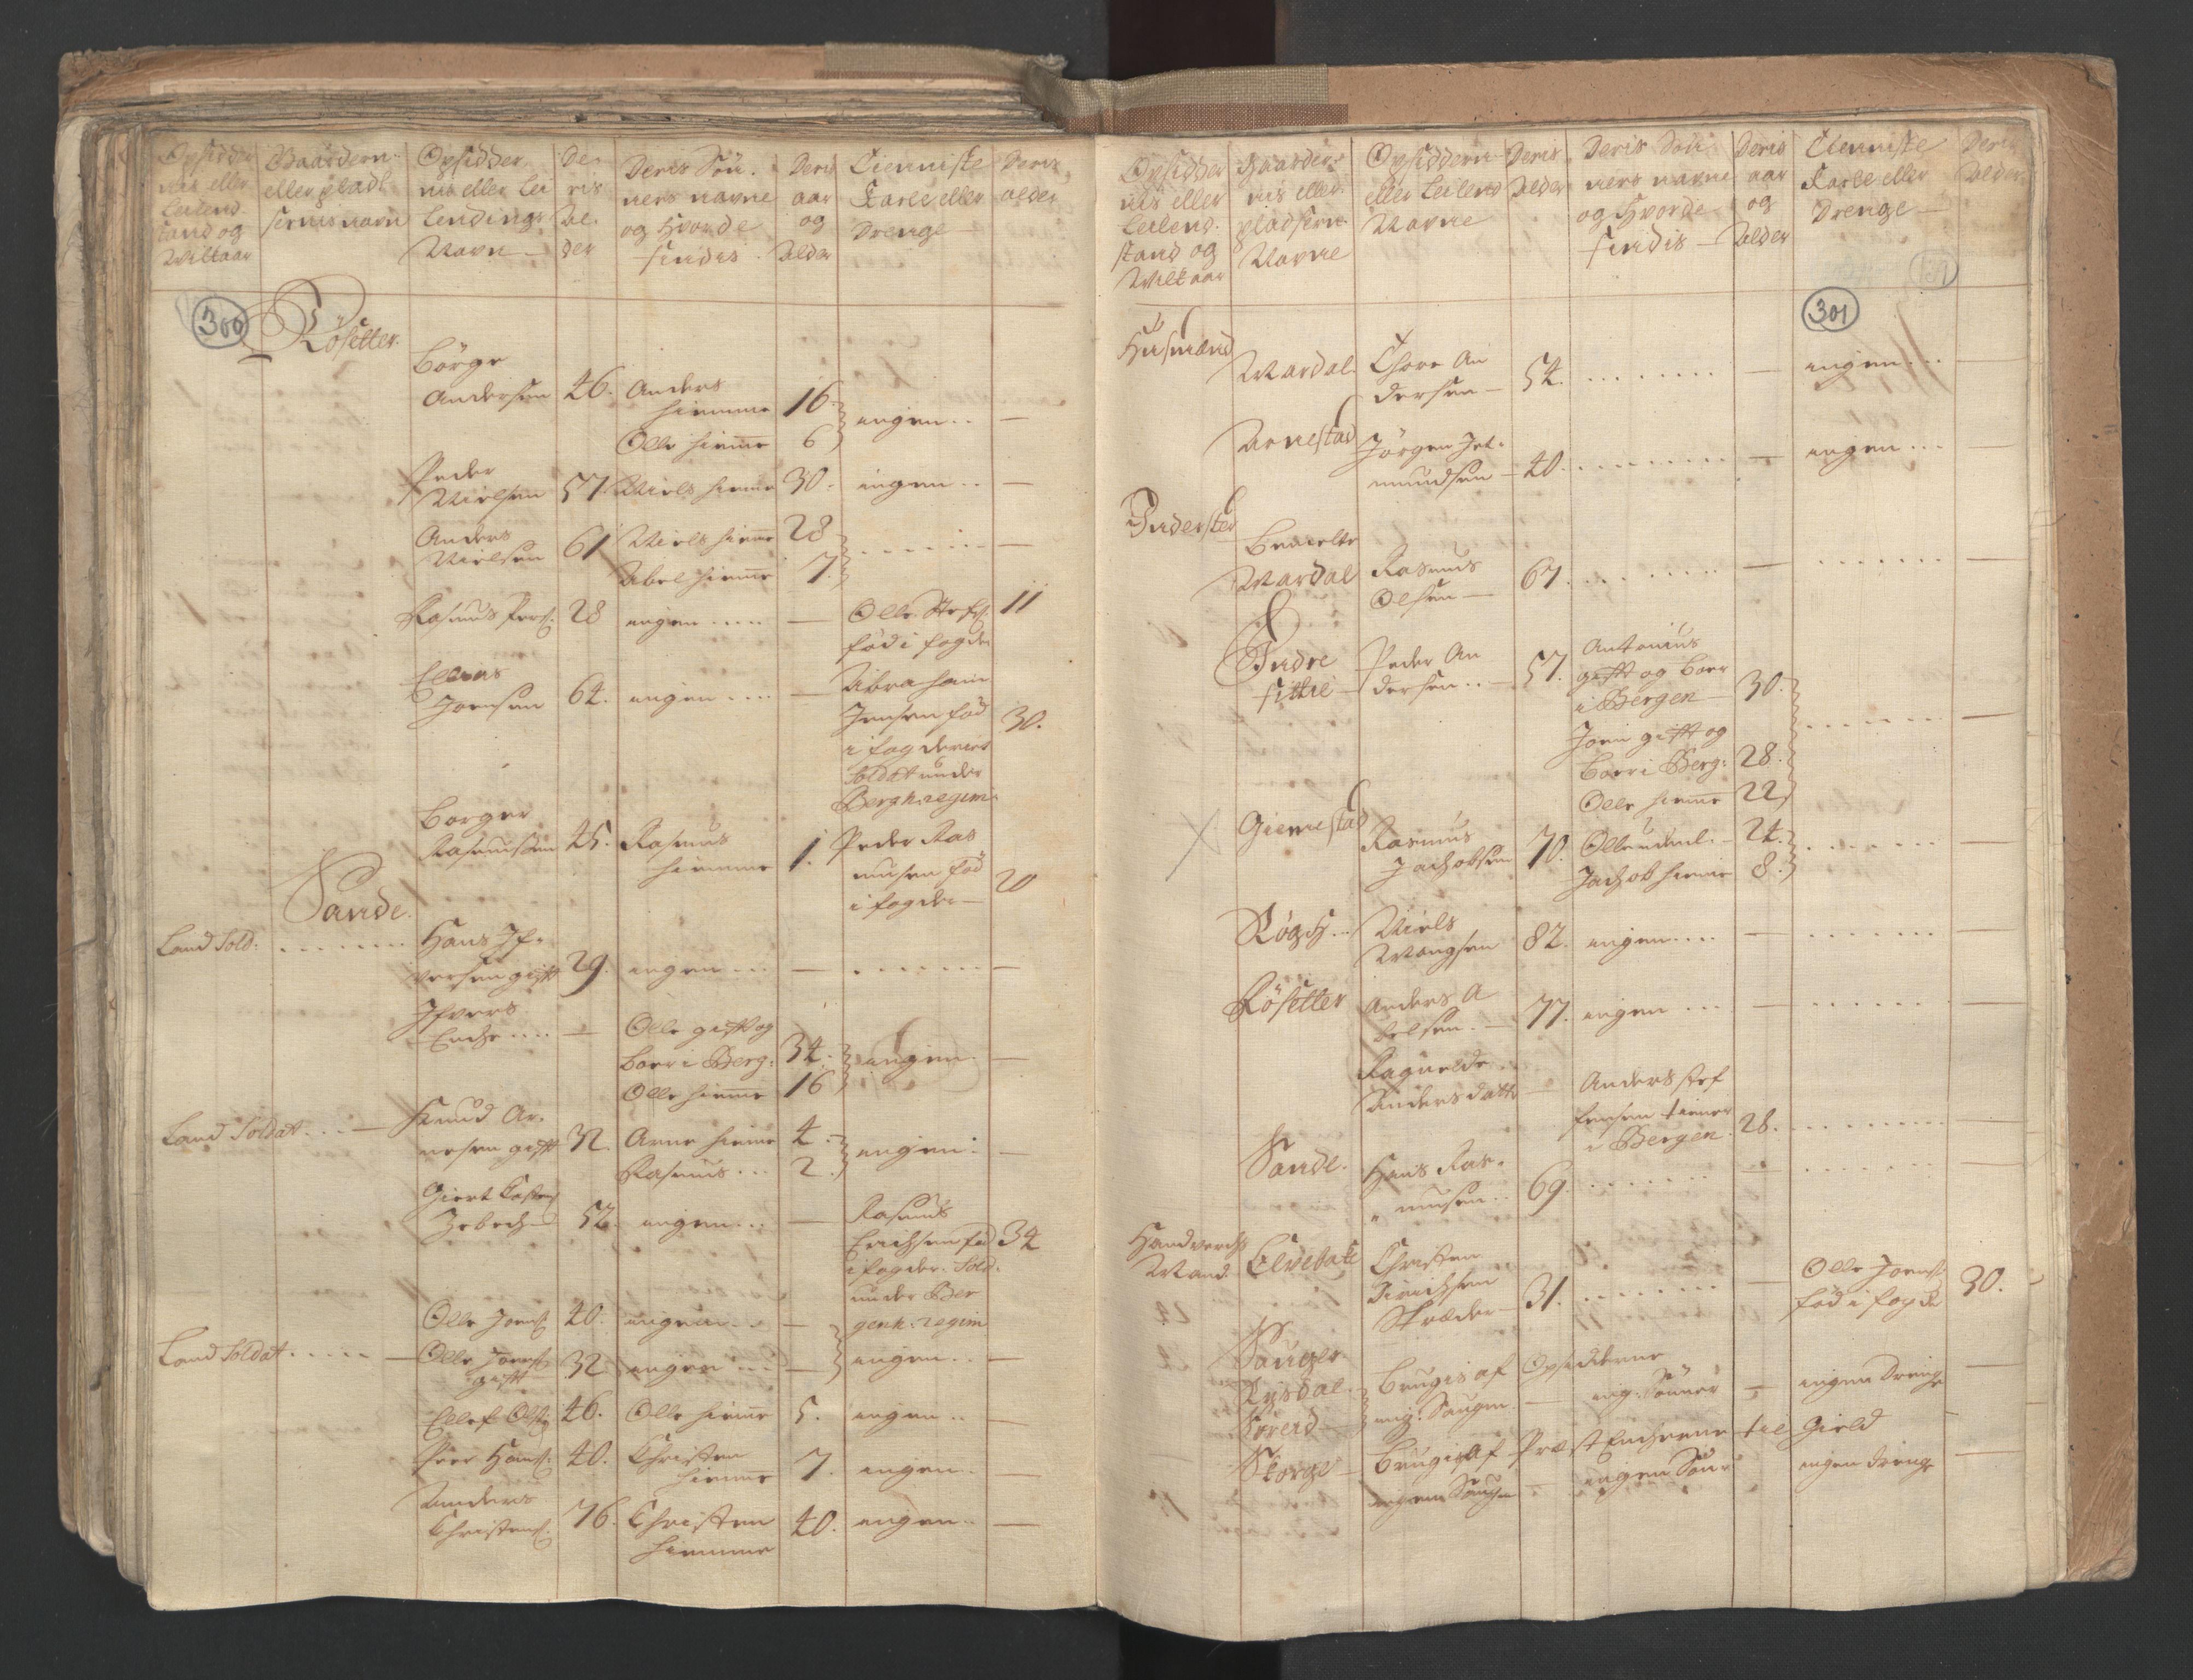 RA, Census (manntall) 1701, no. 9: Sunnfjord fogderi, Nordfjord fogderi and Svanø birk, 1701, p. 300-301